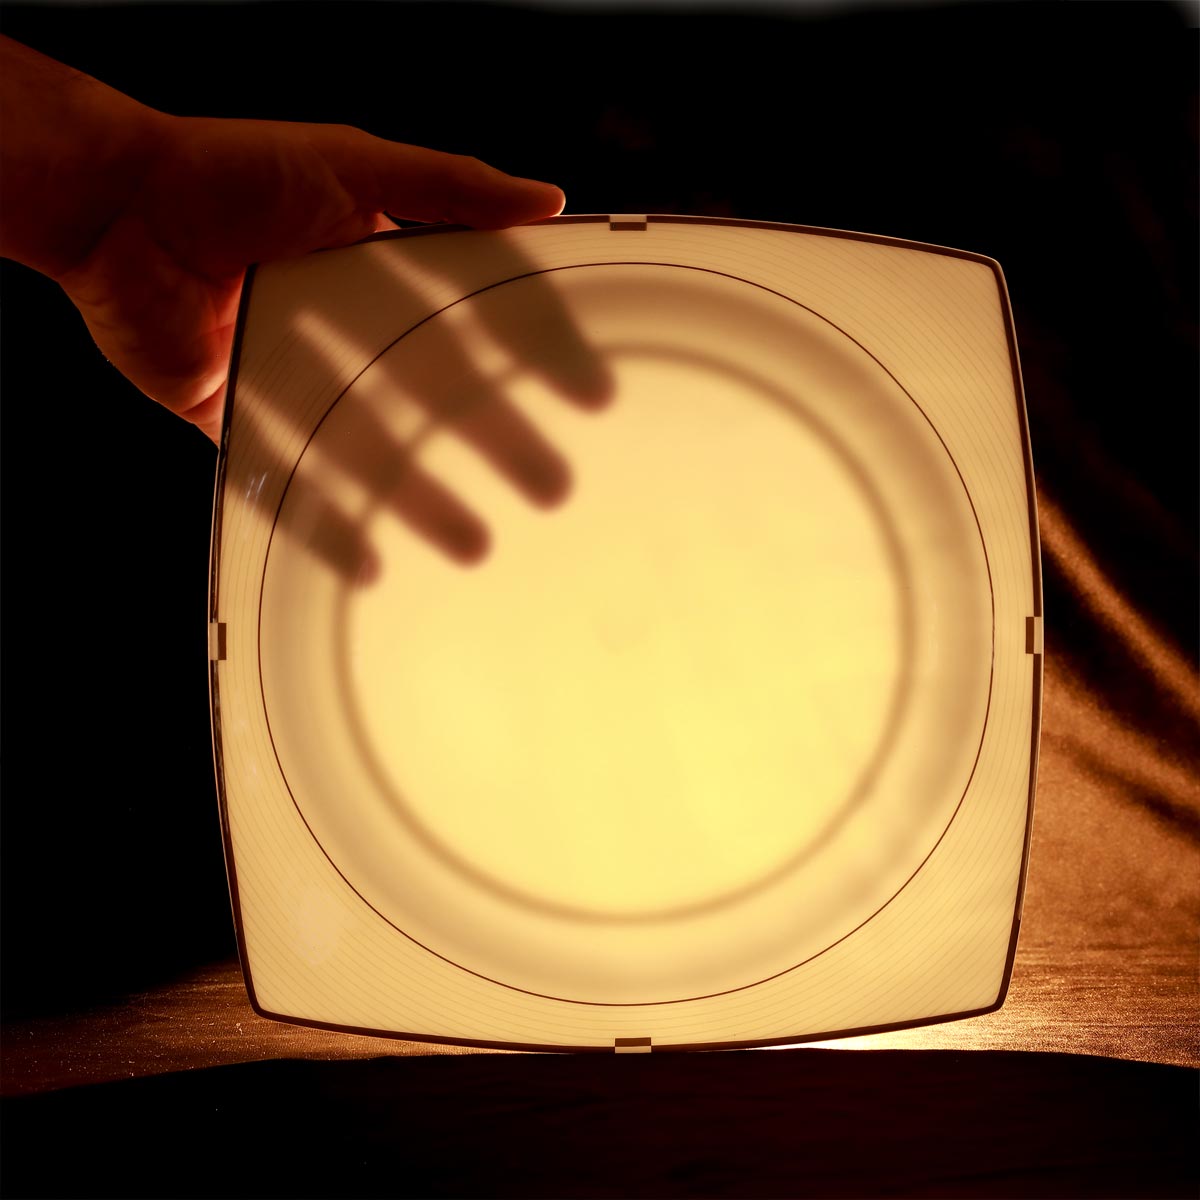 Servizio piatti porcellana trasparente in fine bone china dalla forma quadrata - Dafne